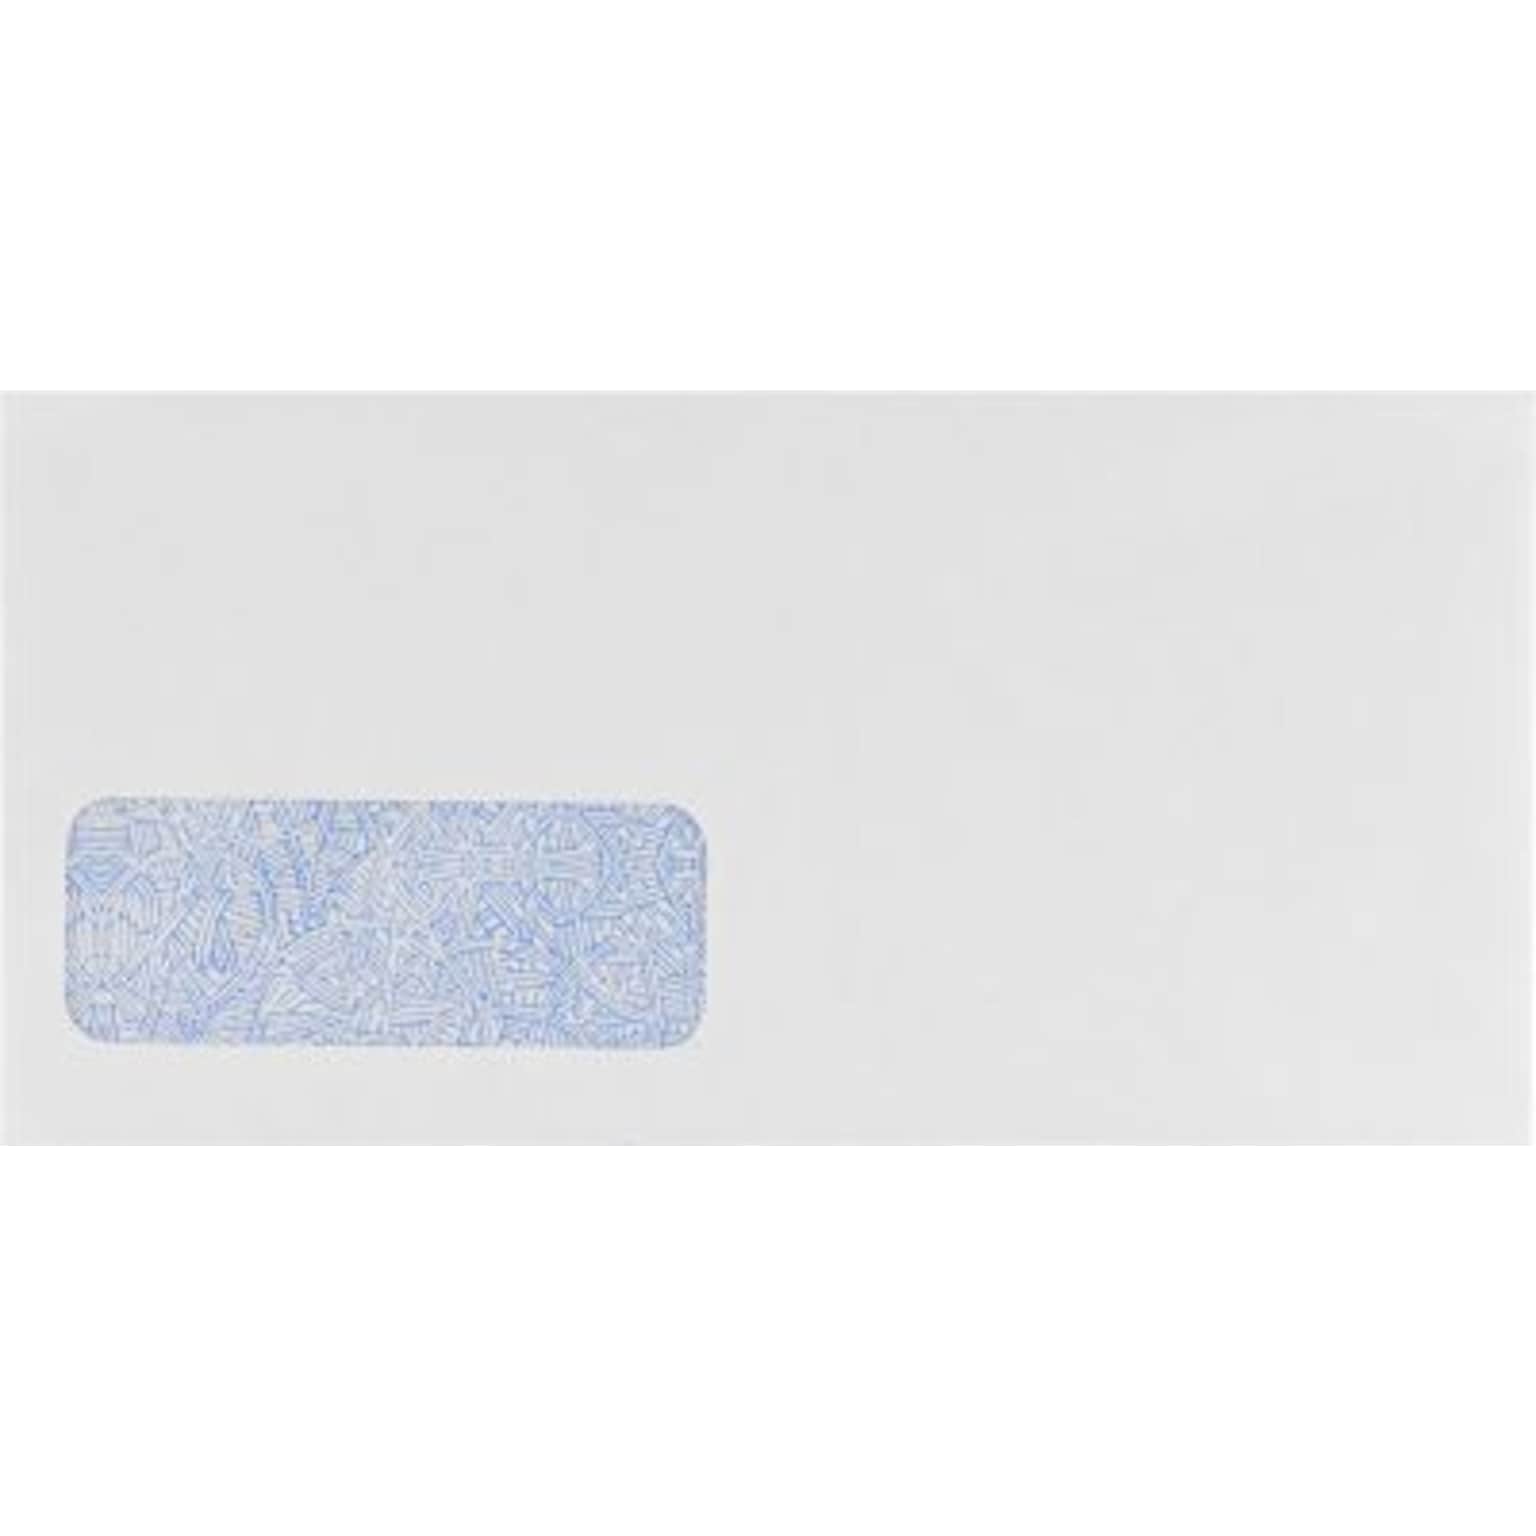 LUX W-2 / 1099 Form Envelopes #5 (3 13/16 x 7 13/16) 50/Box, 24lb. White w/ Sec Tint (WS-7496-50)